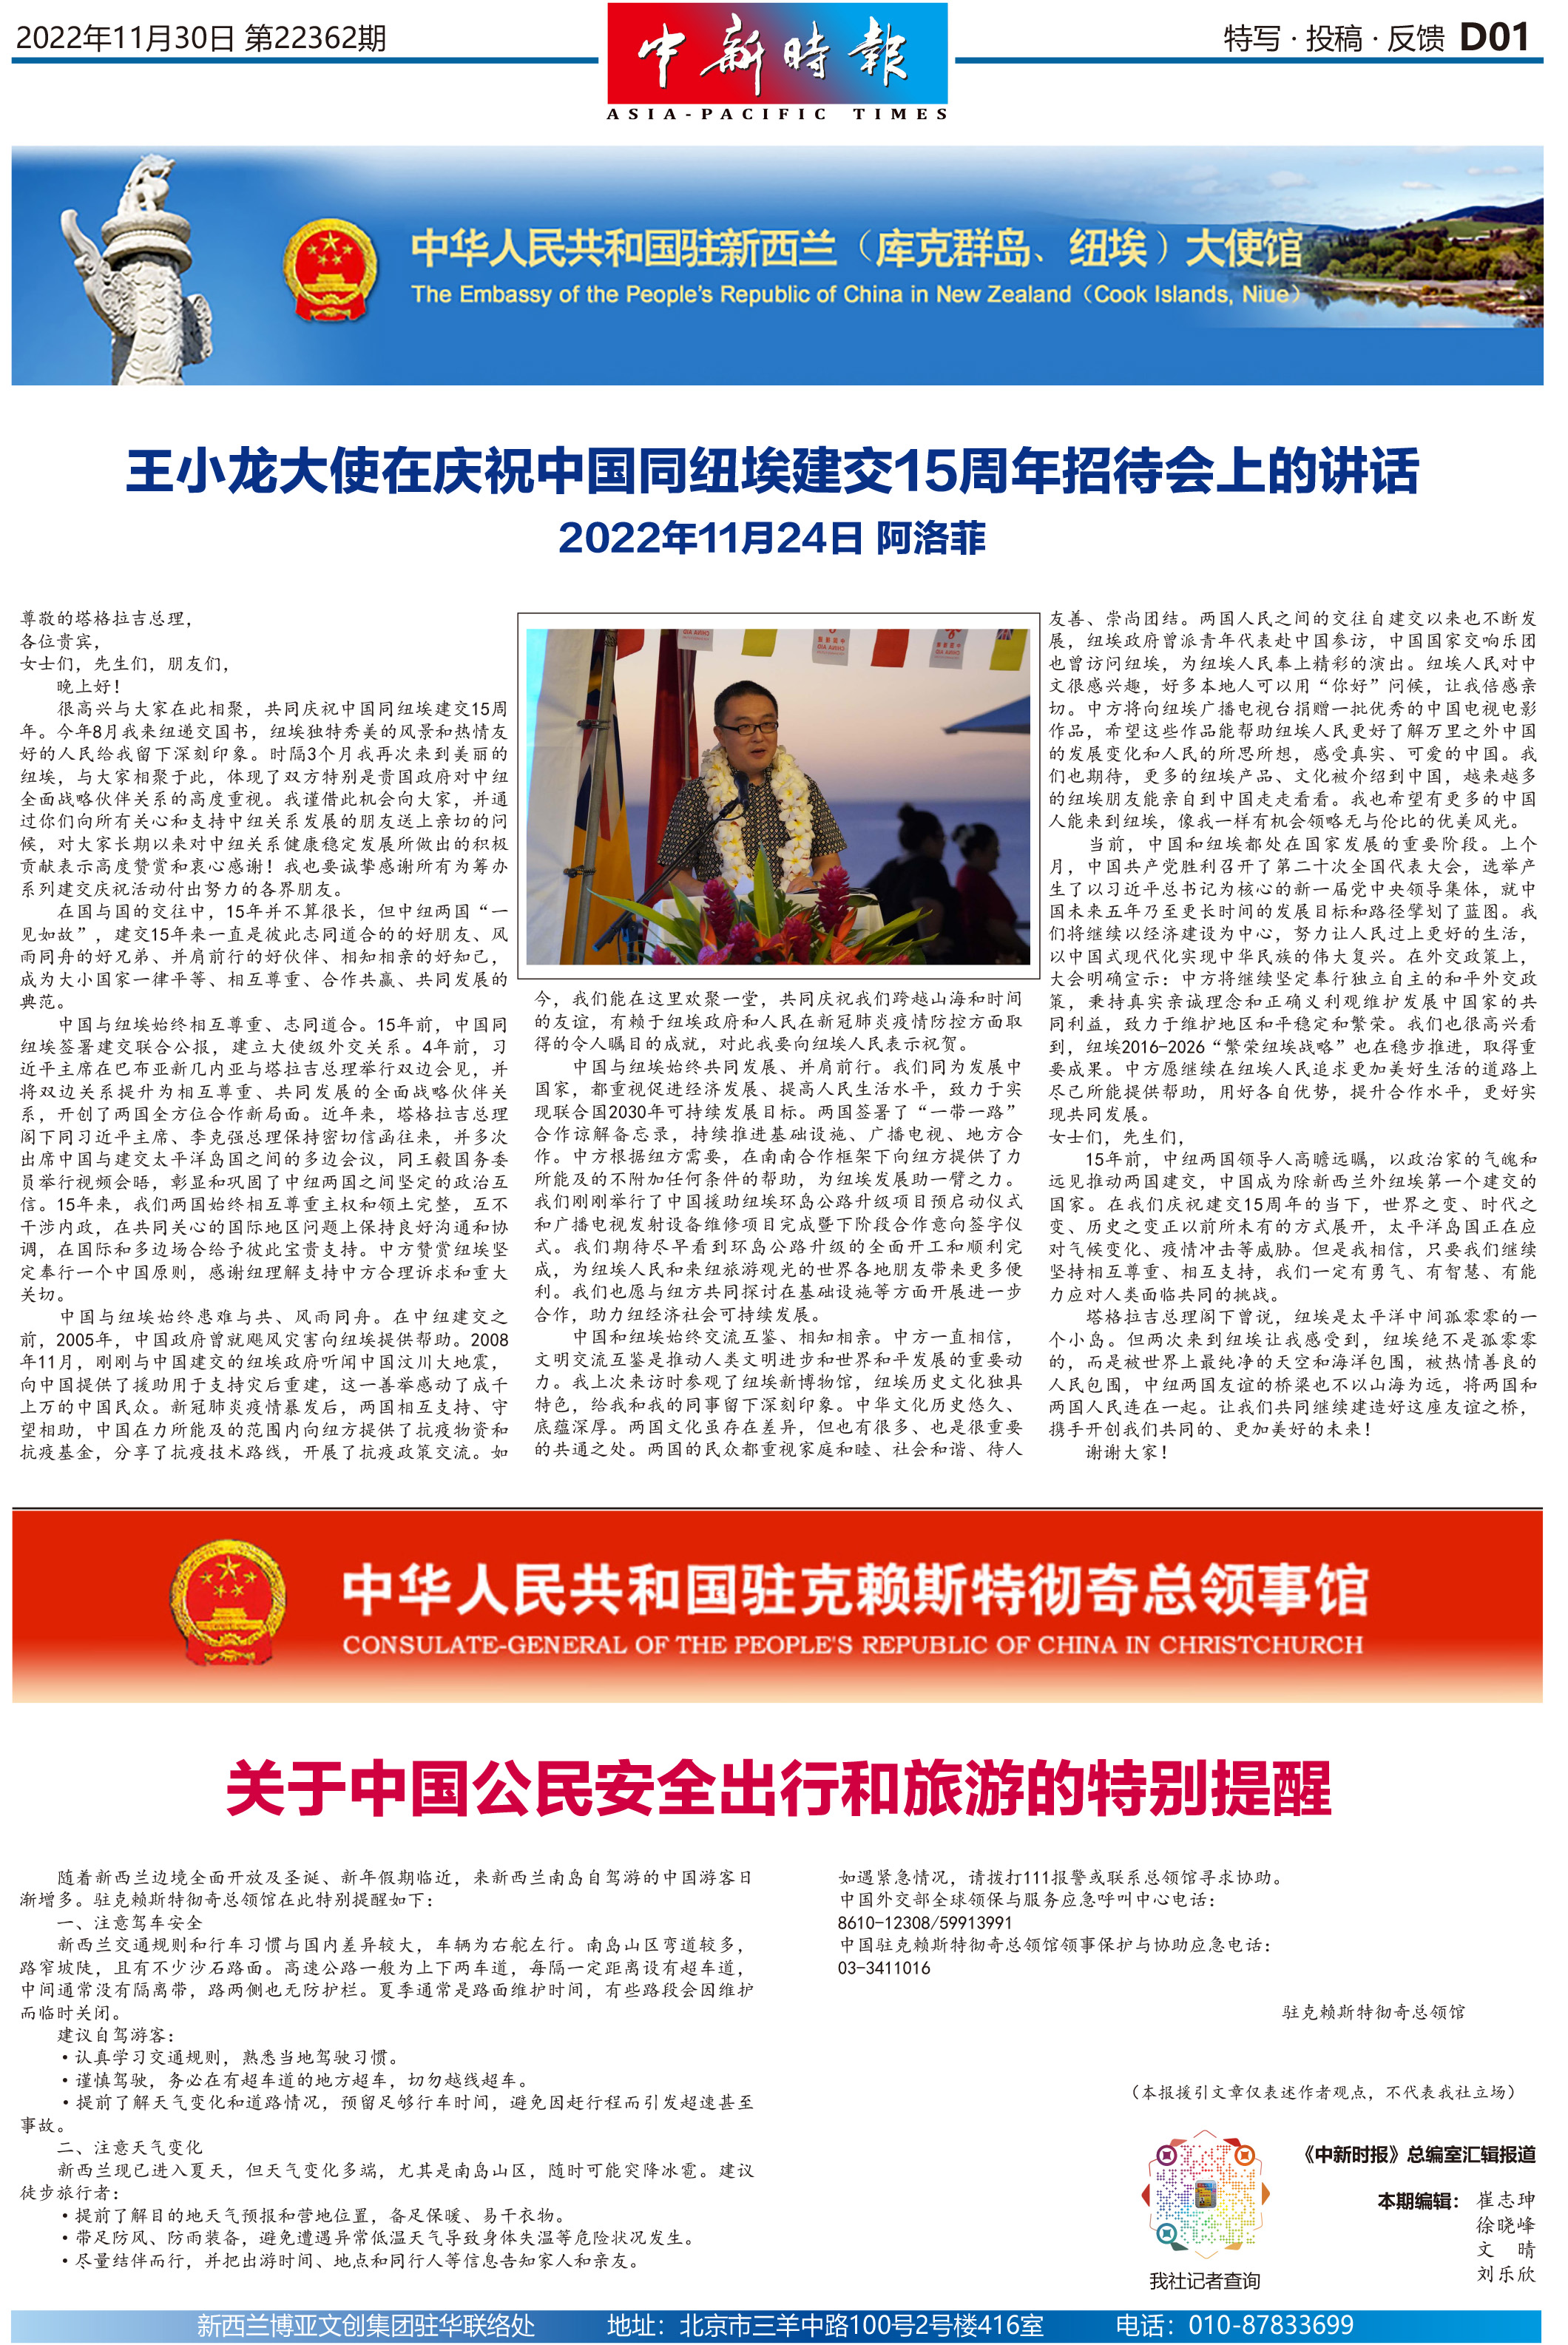 王小龙大使在庆祝中国同纽埃建交15周年招待会上的讲话 / 关于中国公民安全出行和